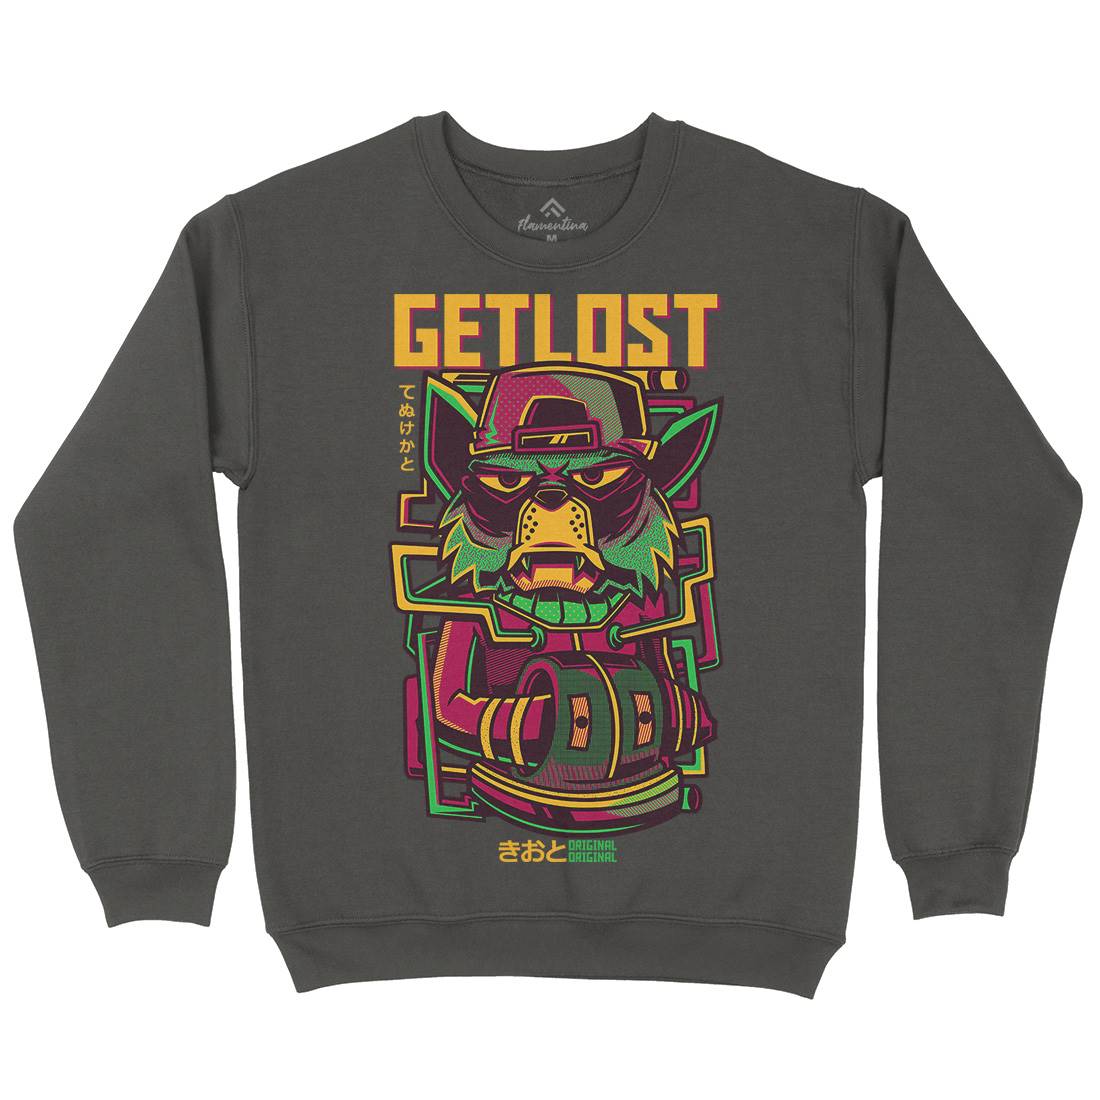 Get Lost Kids Crew Neck Sweatshirt Animals D793